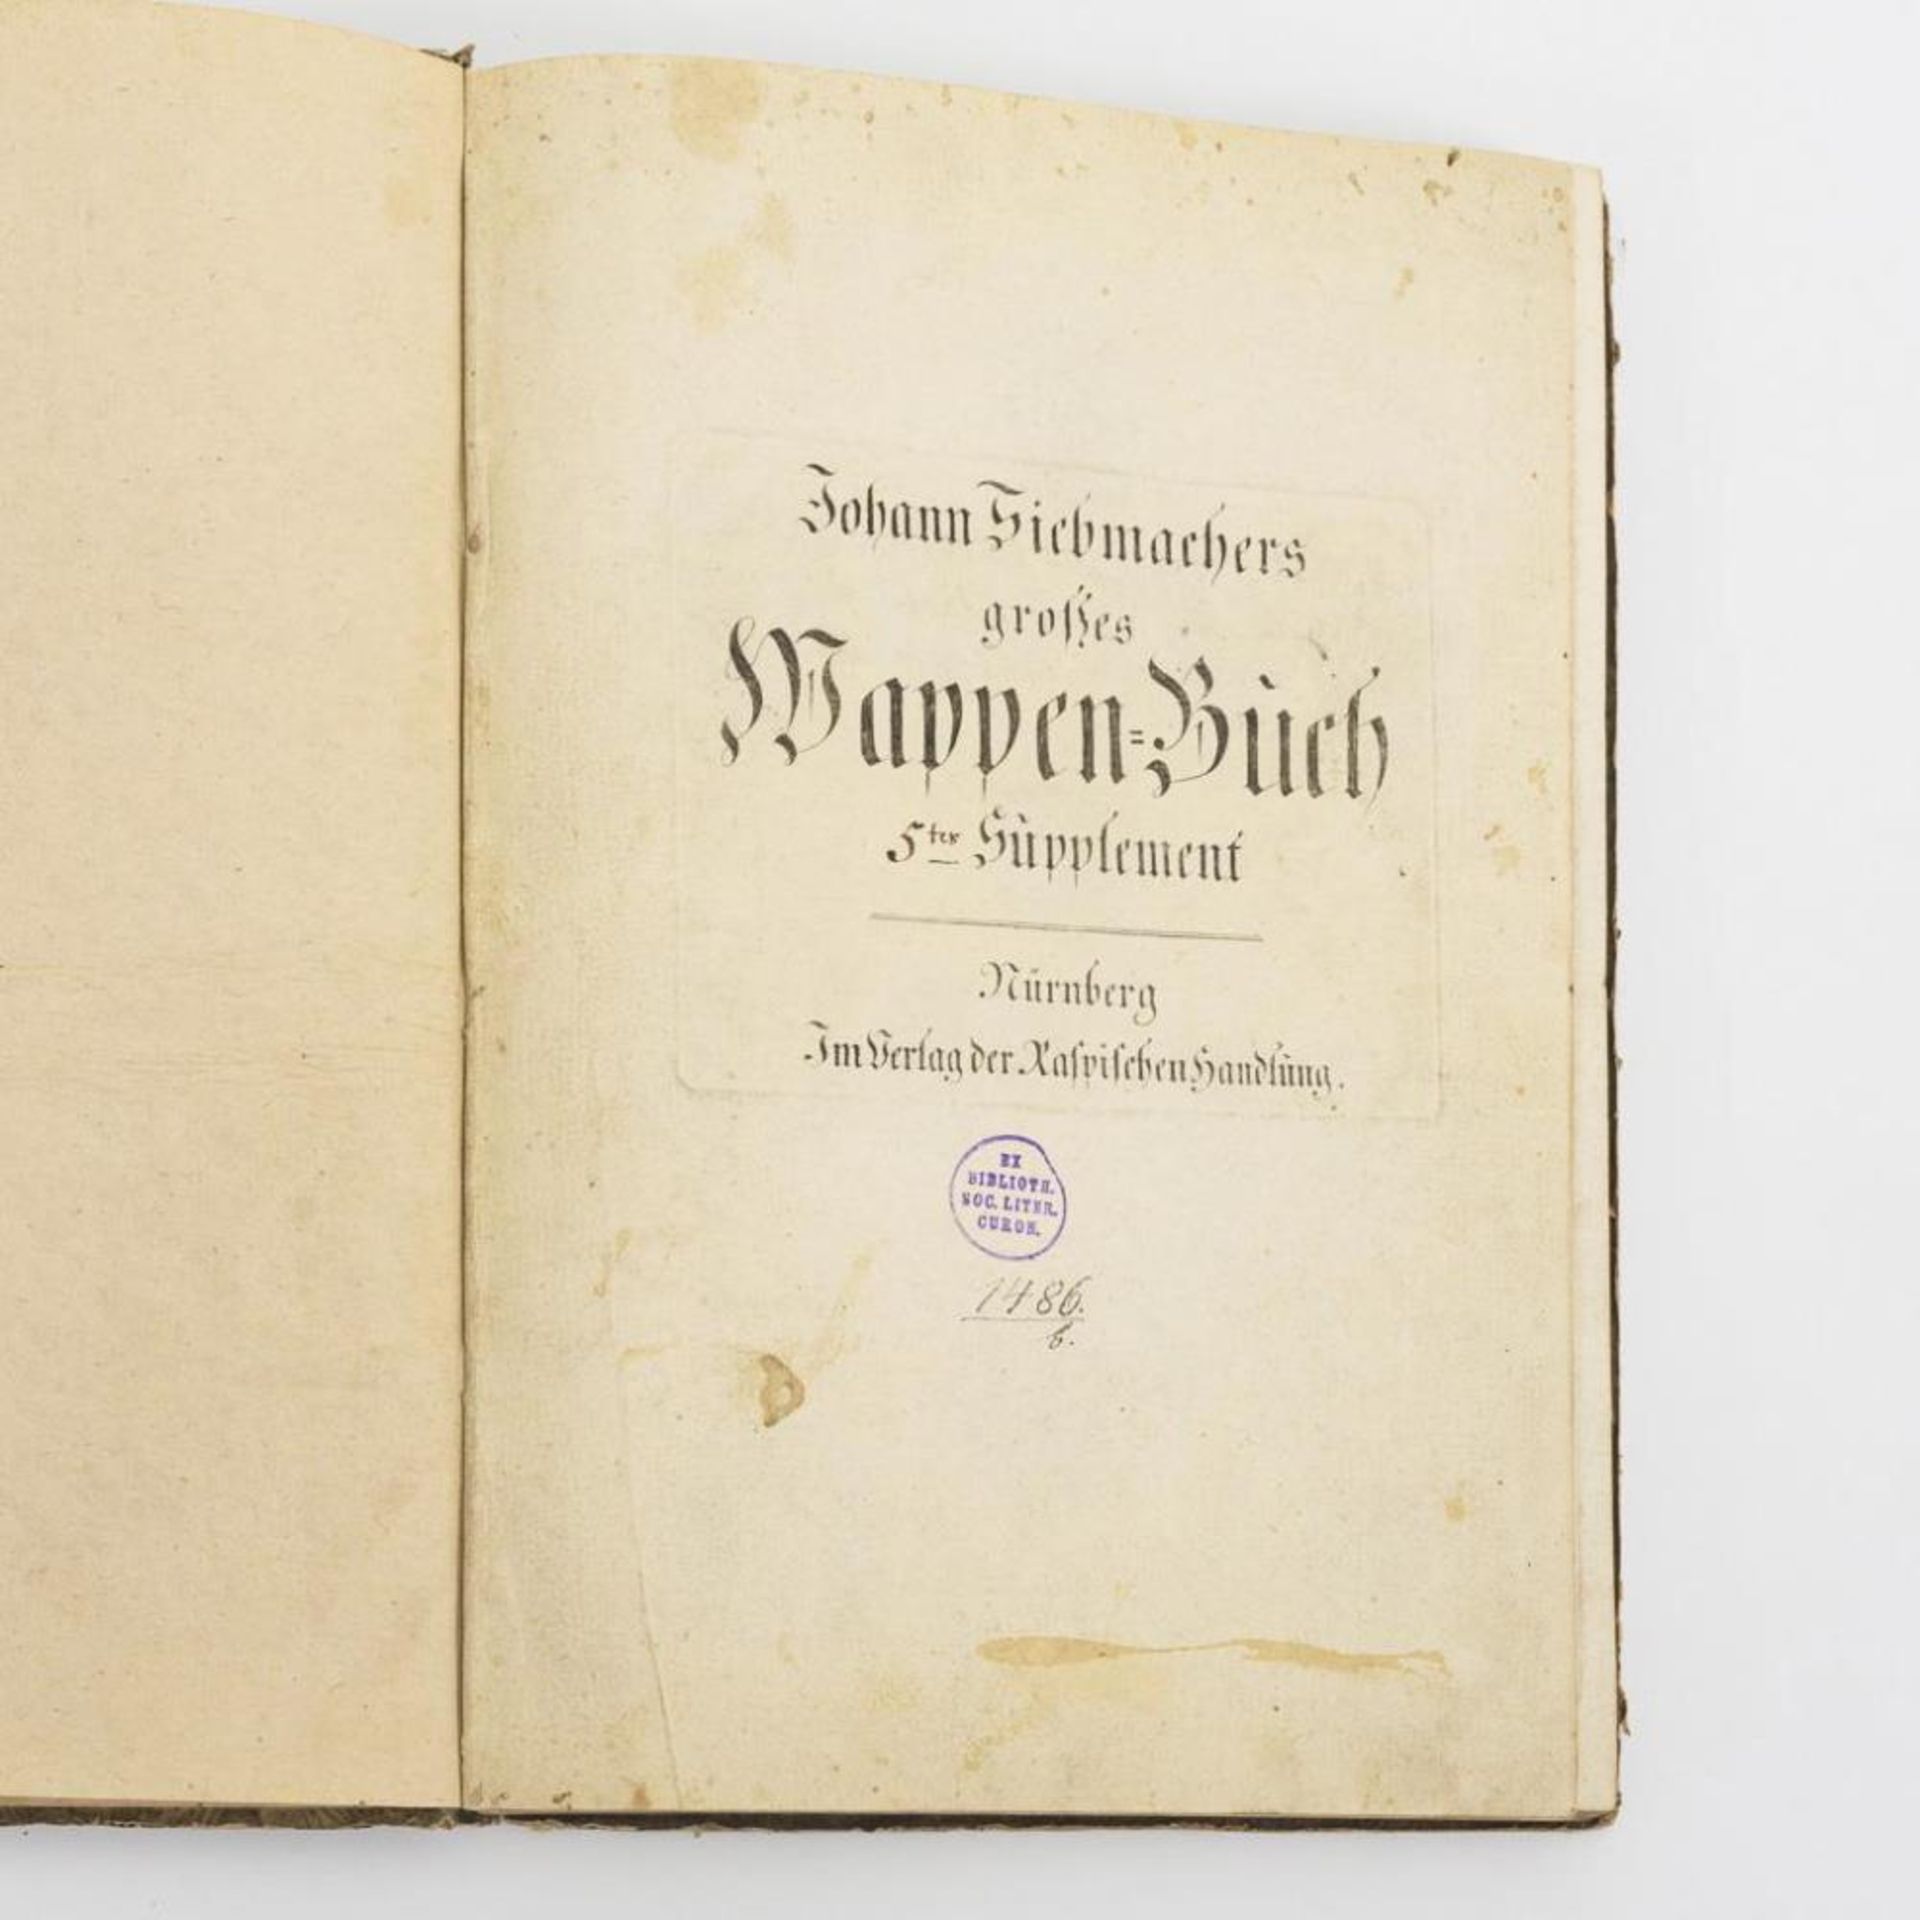 "Siebmachers großes Wappen-Buch" Supplement.